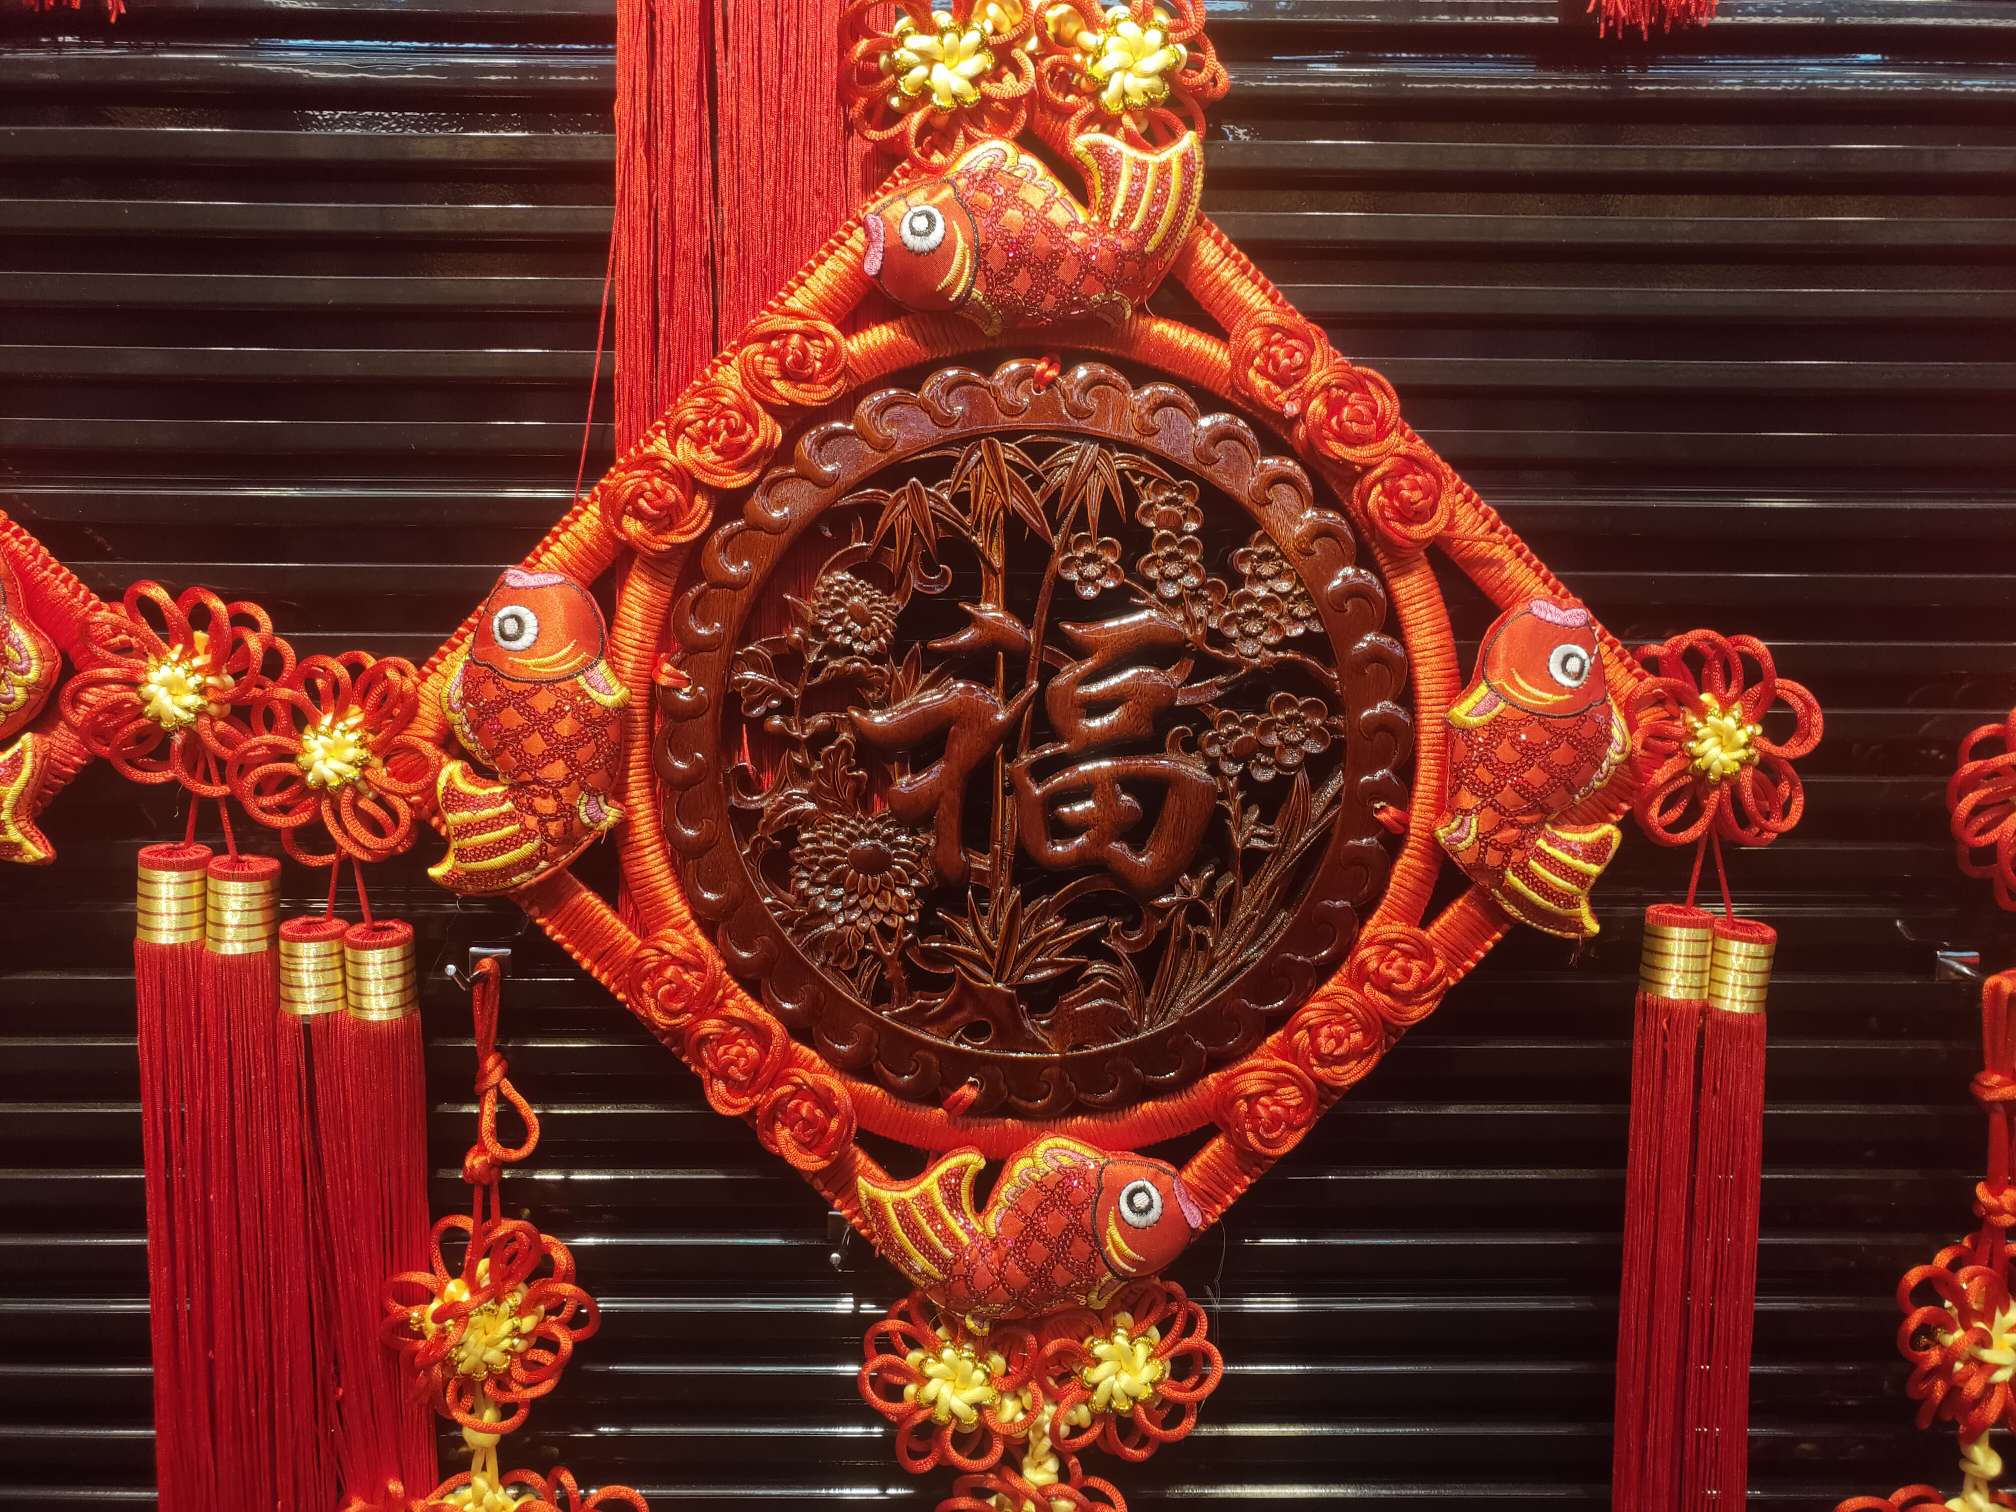 40#方形木雕43春节喜庆用品节日用品红木精品